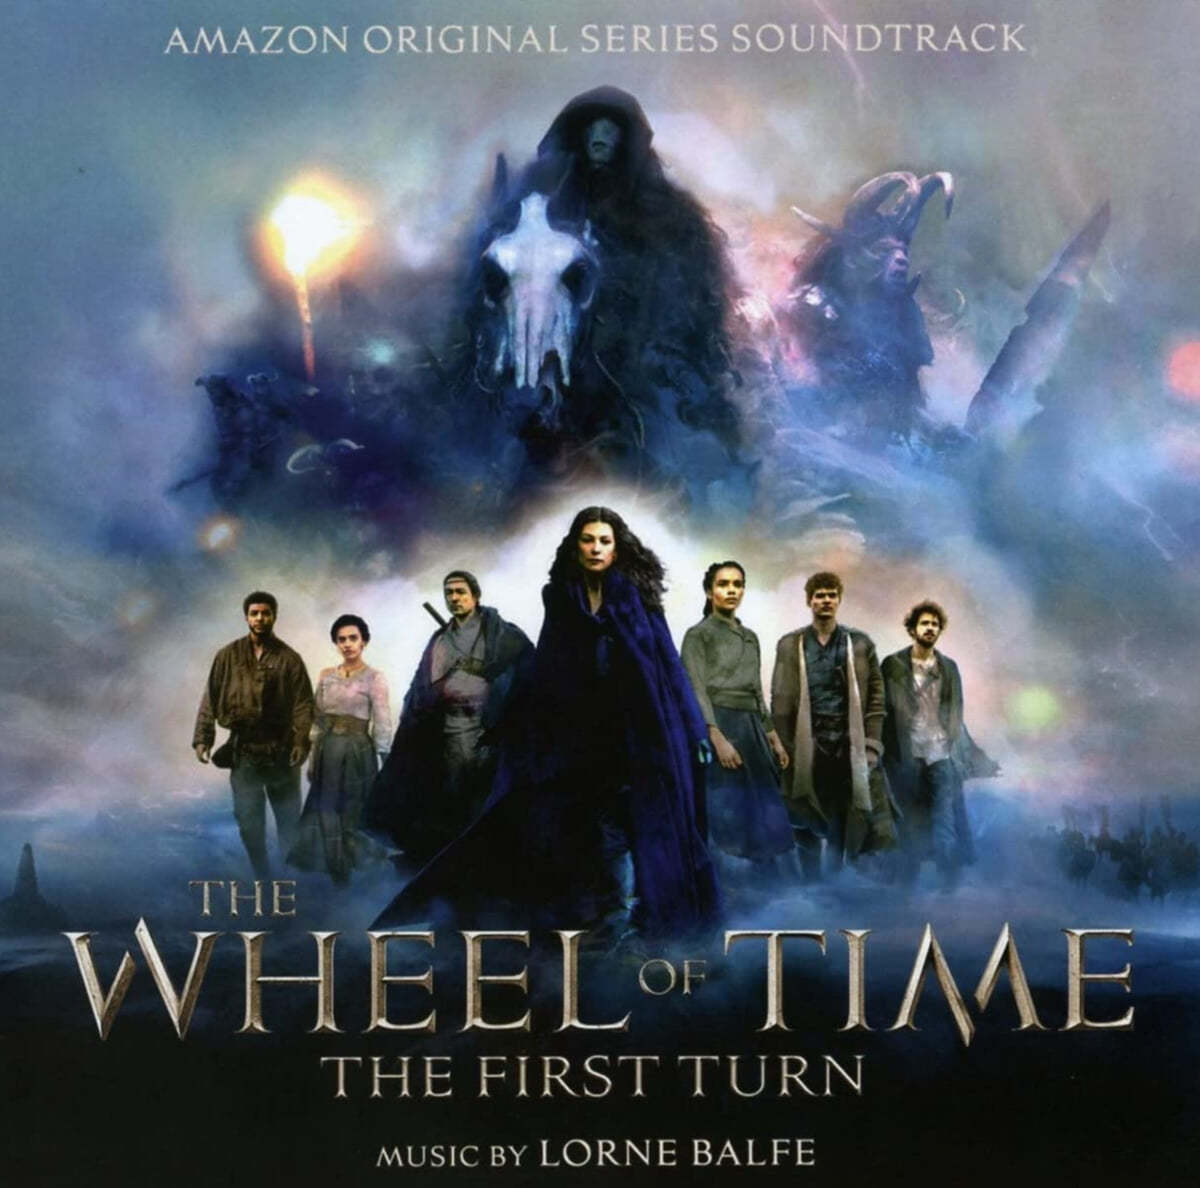 아마존 오리지널 시리즈 '시간의 수레바퀴' 드라마음악 (The Wheel of Time: The First Turn OST by Lorne Balfe)